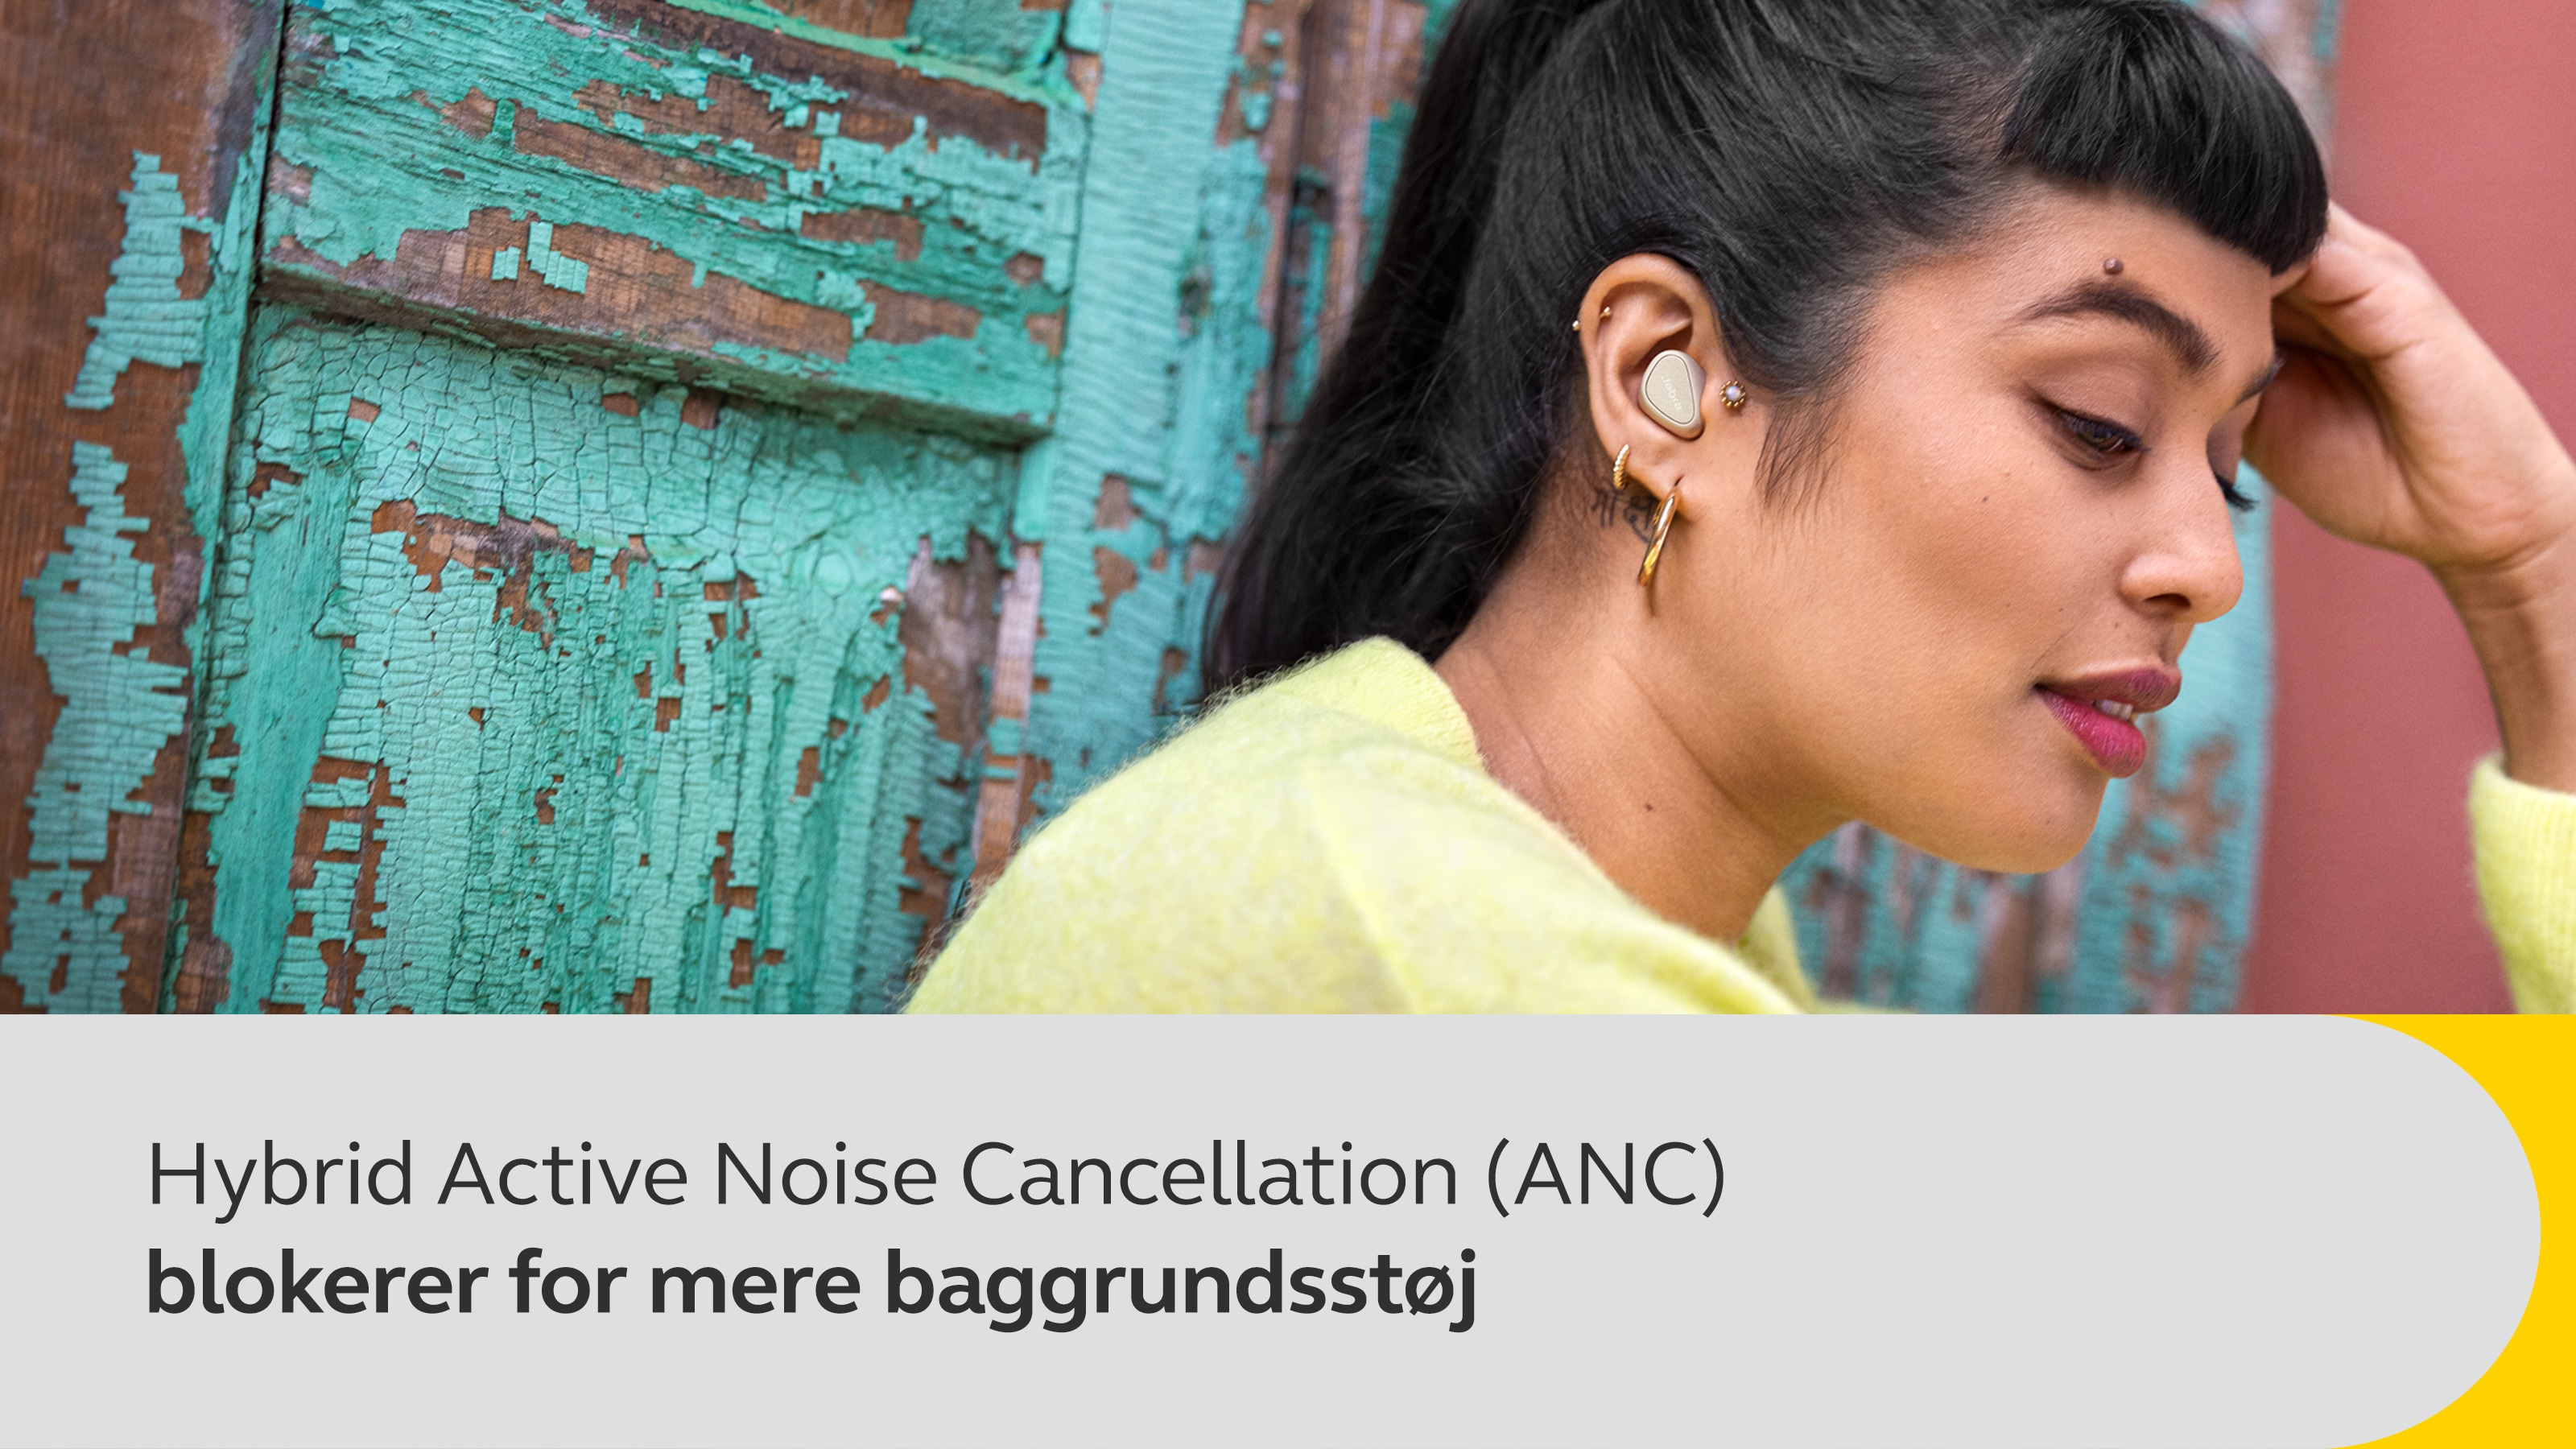 Hybrid Active Noise Cancellation (ANC) blokerer mere baggrundsstøj